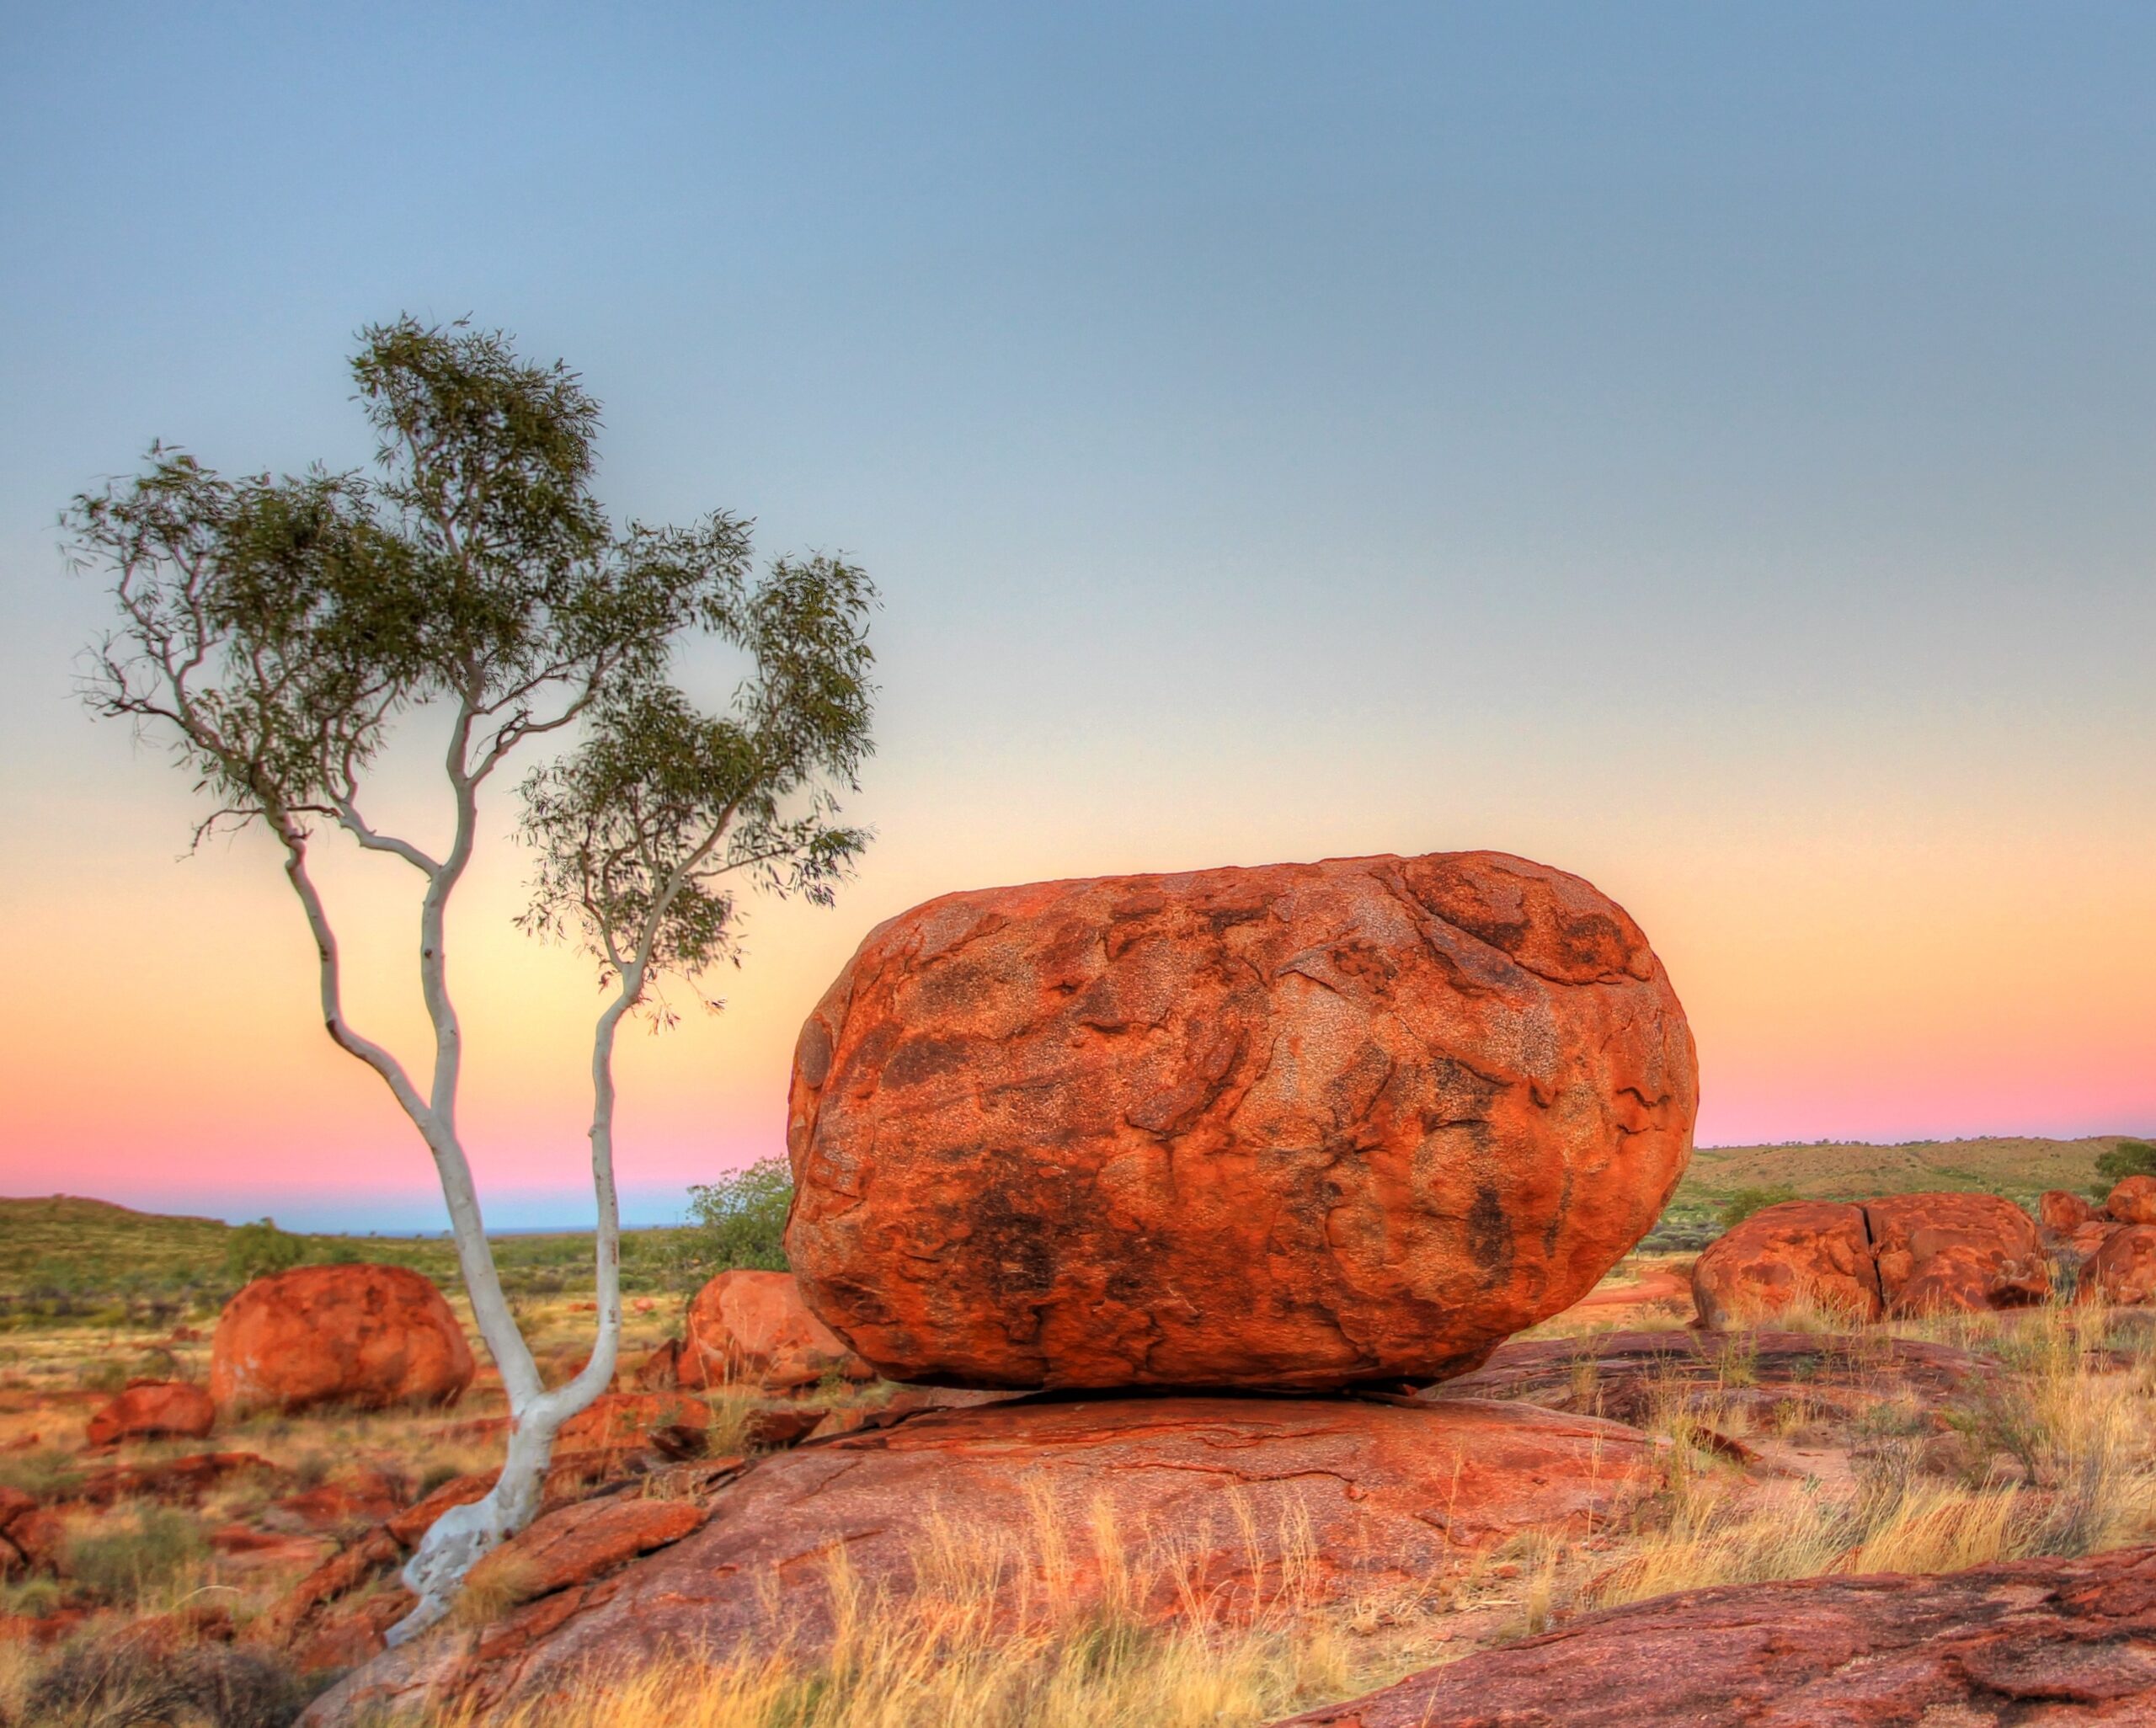 Karlu Karlu - Devils Marbles in outback Australia steel blue